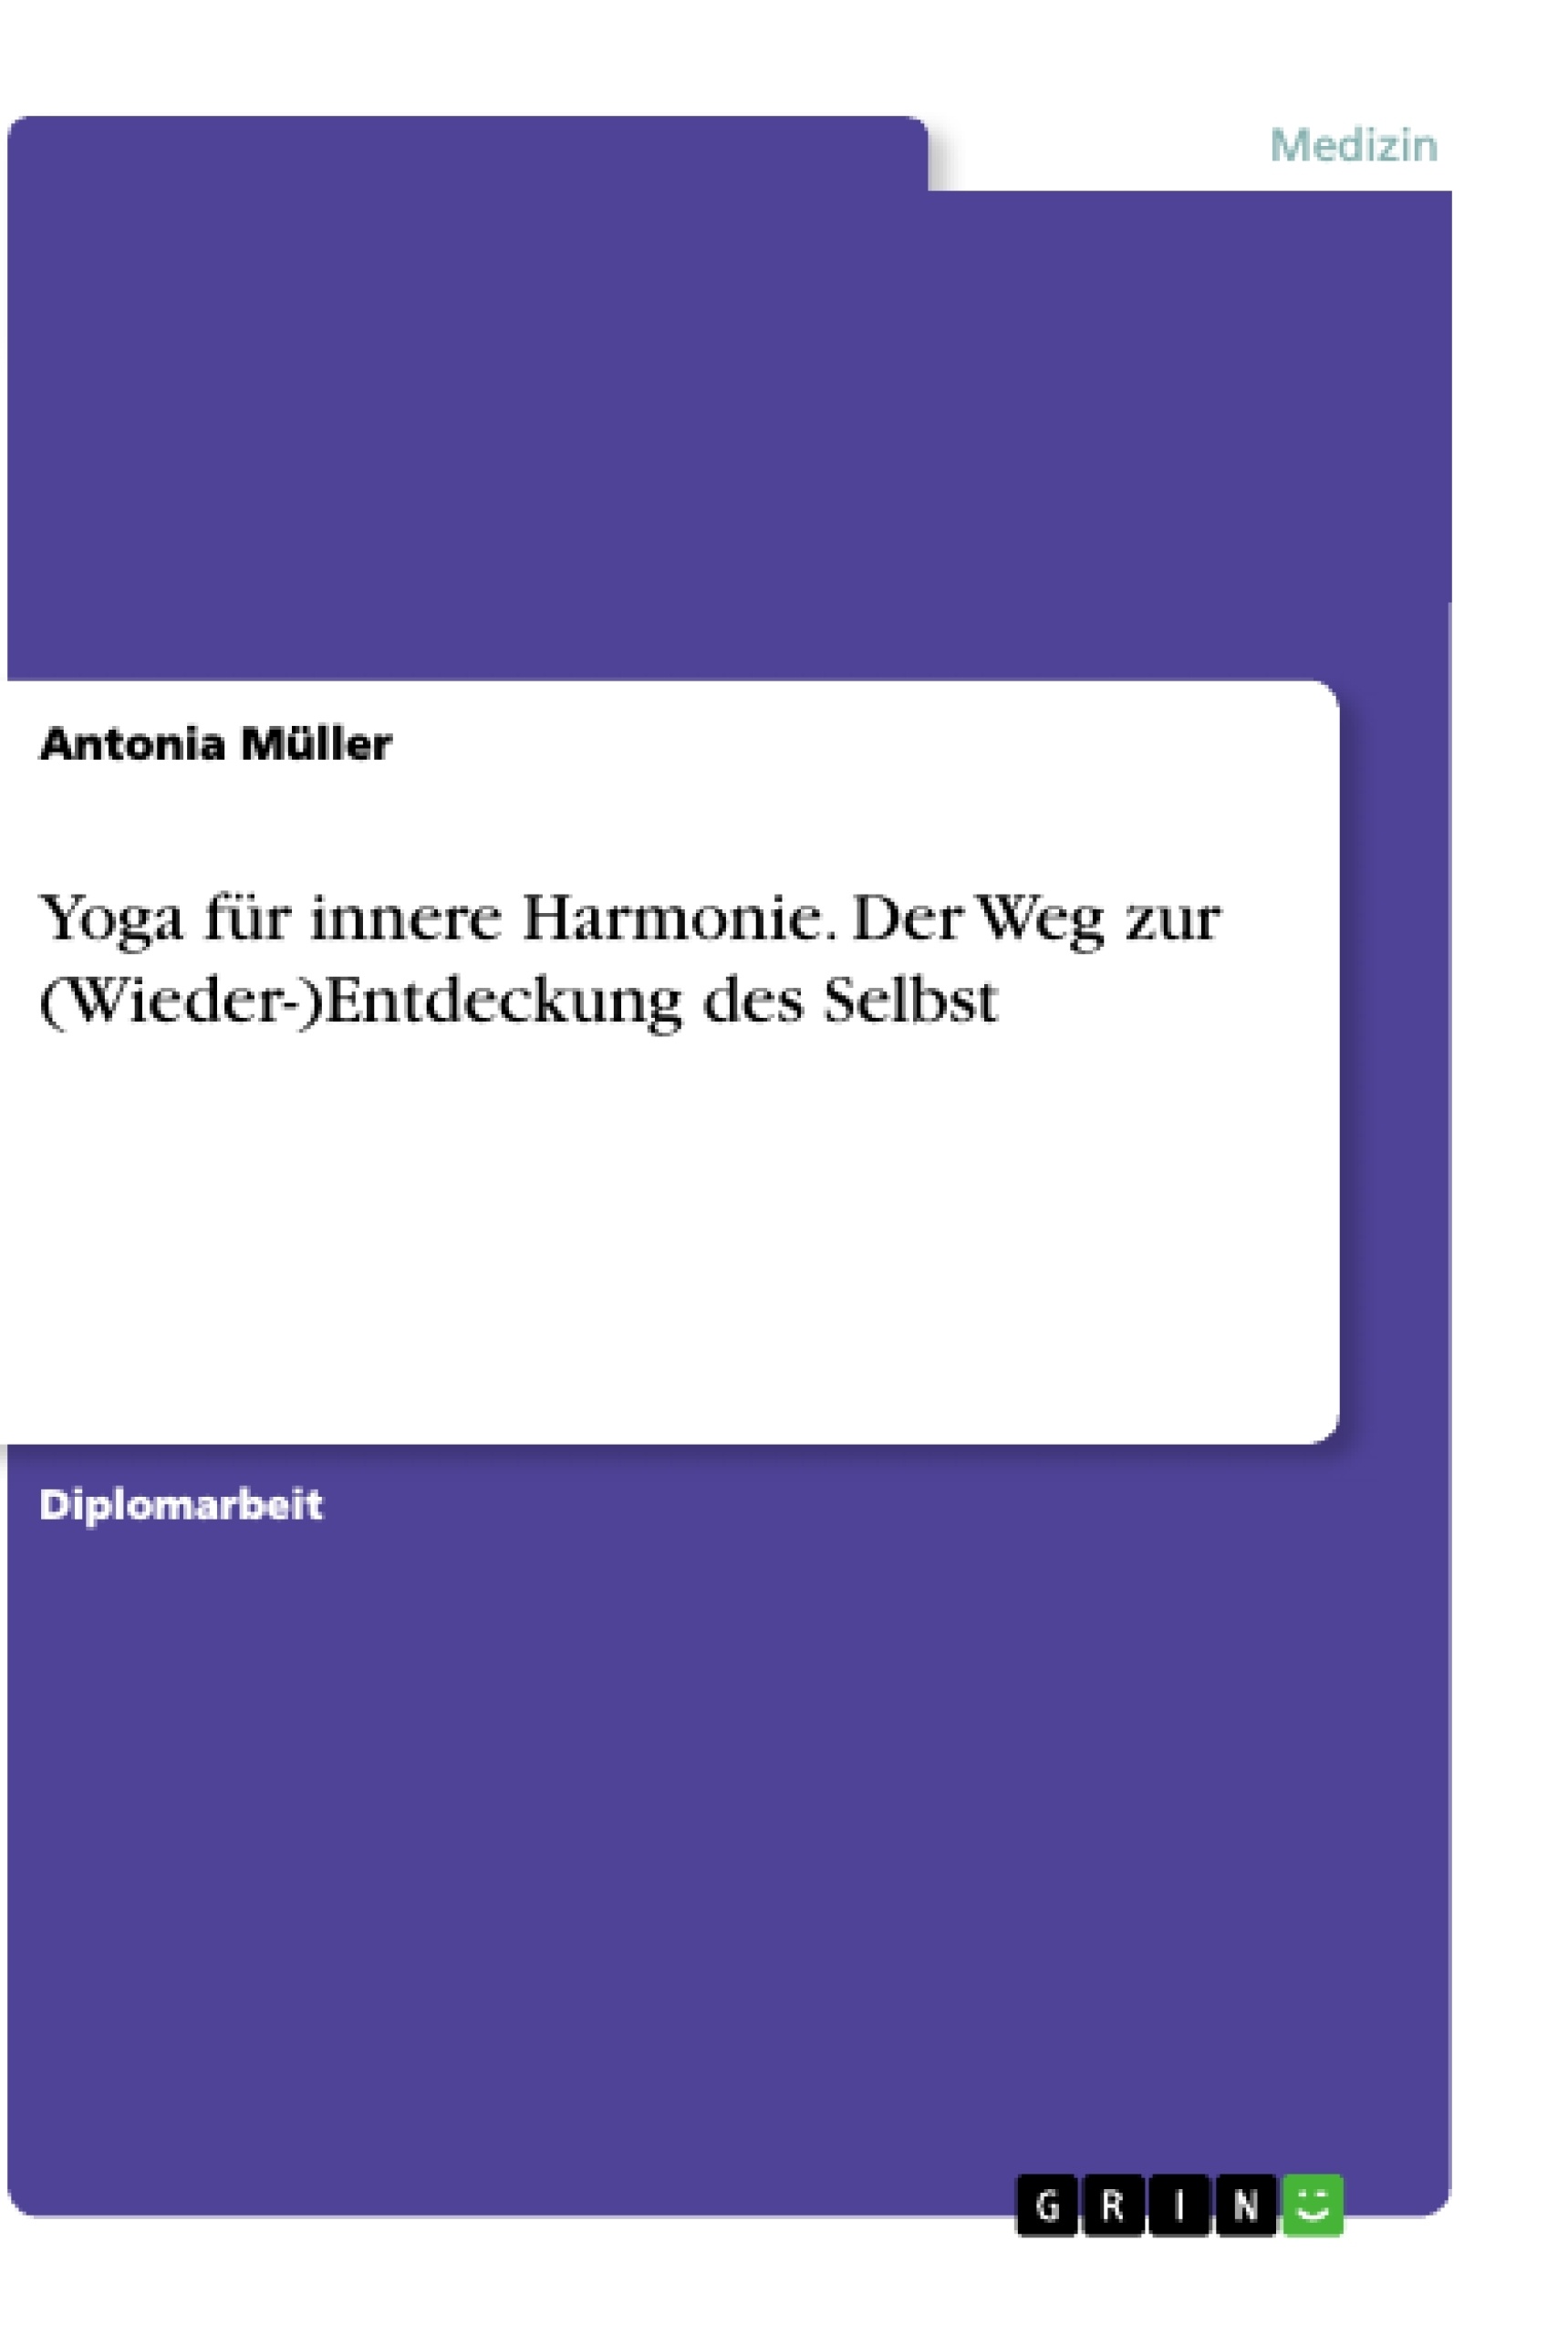 Título: Yoga für innere Harmonie. Der Weg zur (Wieder-)Entdeckung des Selbst